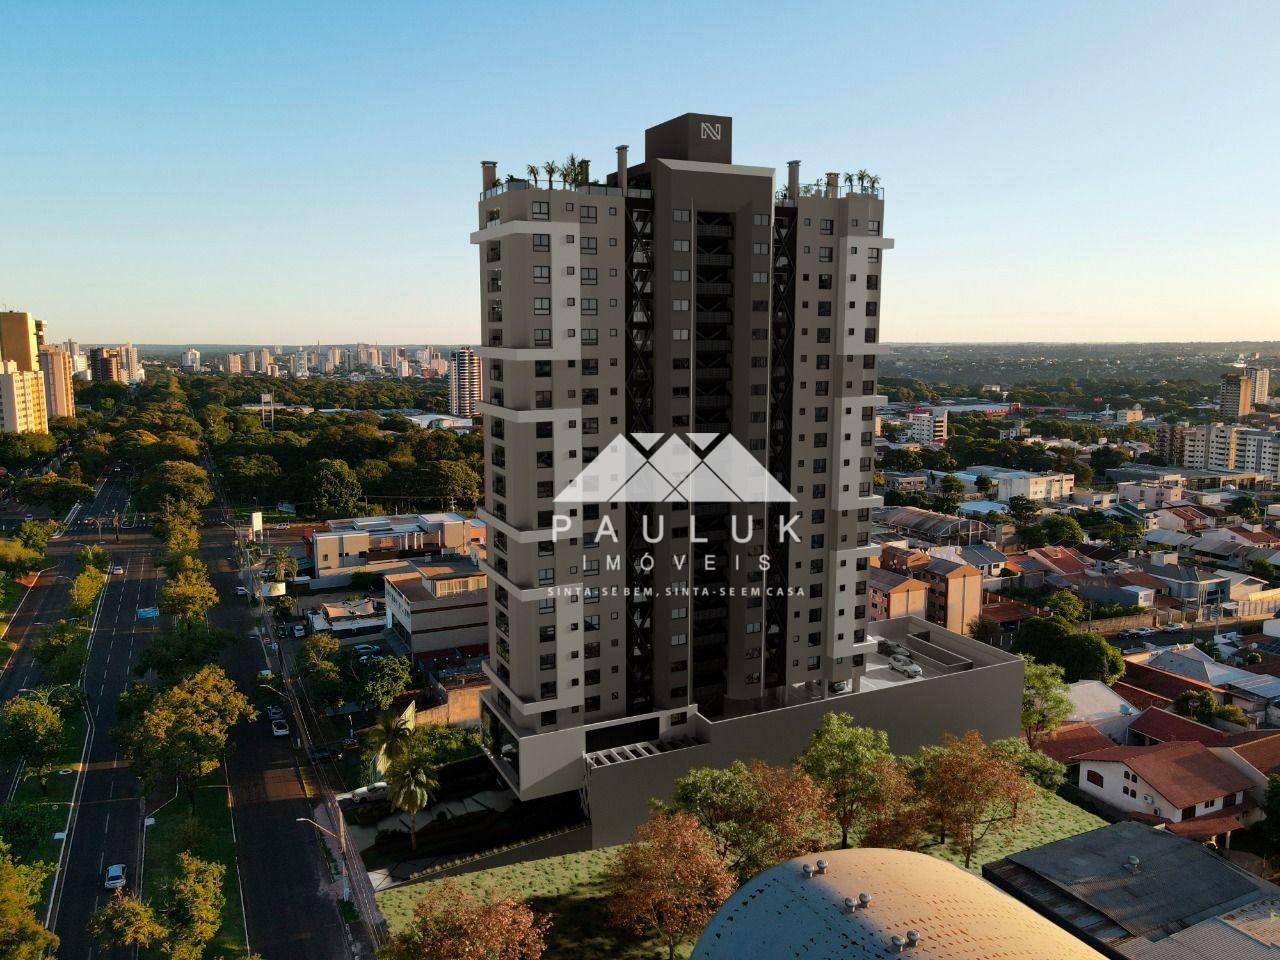 Apartamento com 2 Dormitórios à venda Por R$ 516.841,19 - Edifício Sunset 3615 - Foz do Iguaçu/pr | PAULUK IMÓVEIS | Portal OBusca